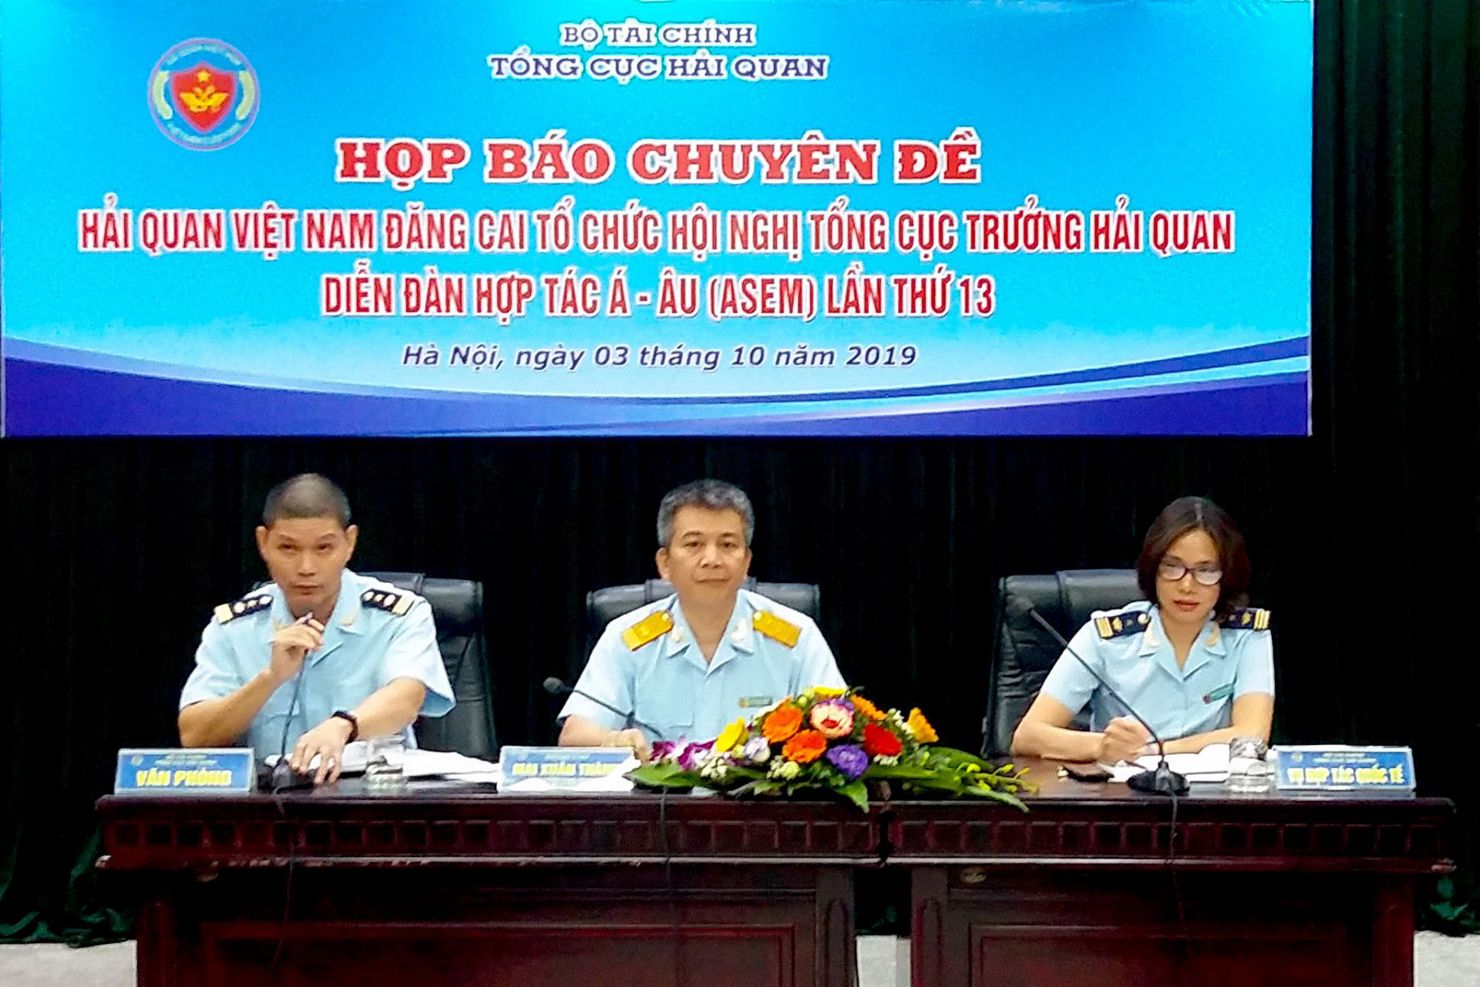 Toàn cảnh Họp báo chuyên đề thông tin trước thềm Hội nghị Tổng cục trưởng Hải quan Diễn đàn ASEM tại Hà Nội, ngày 3/10/2019